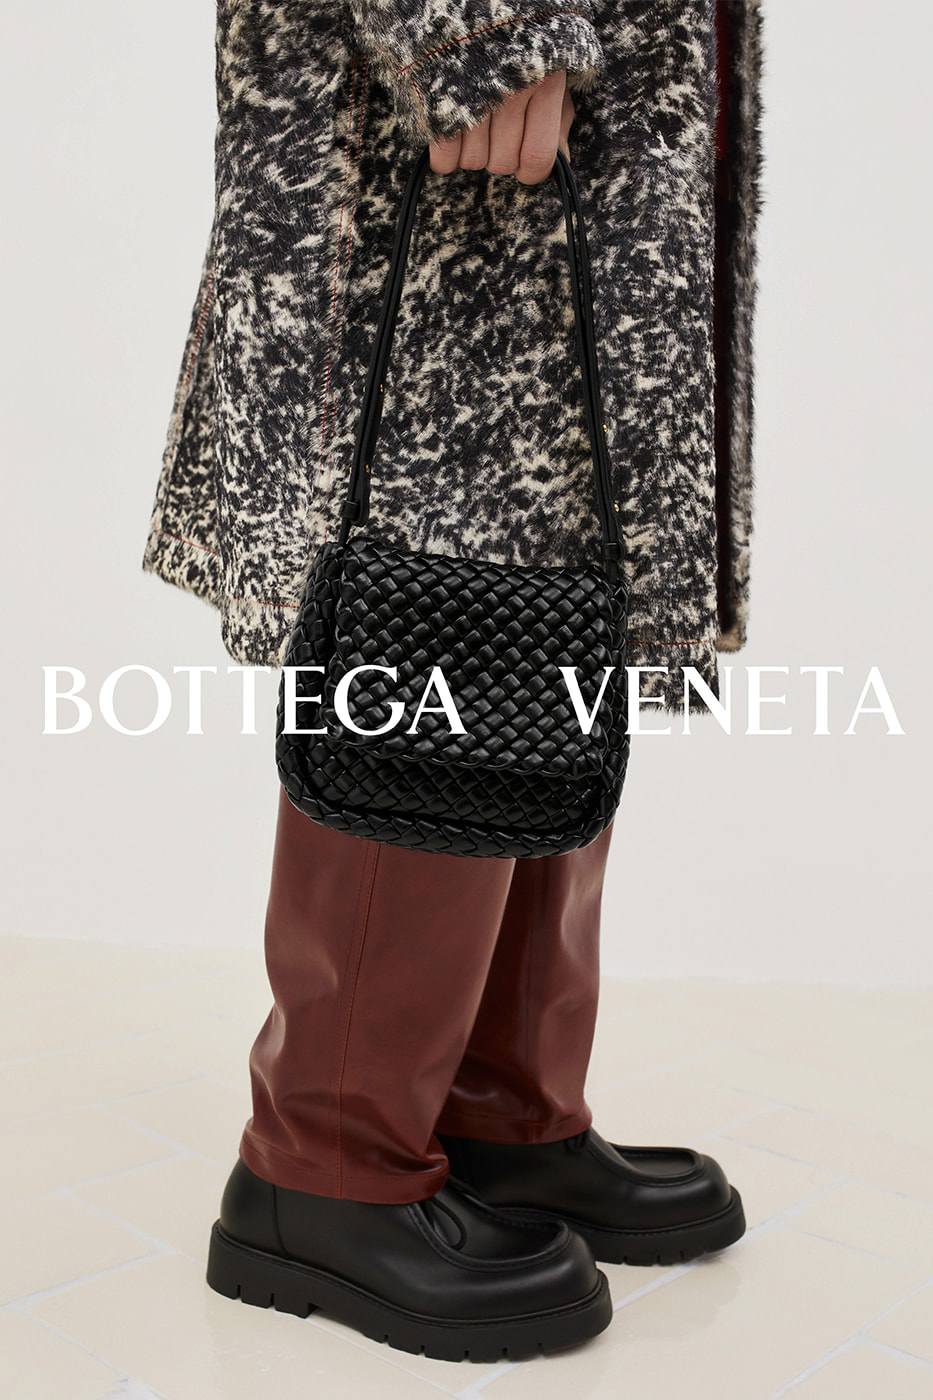 Bộ sưu tập đẹp như giấc mơ của Bottega Veneta - 11